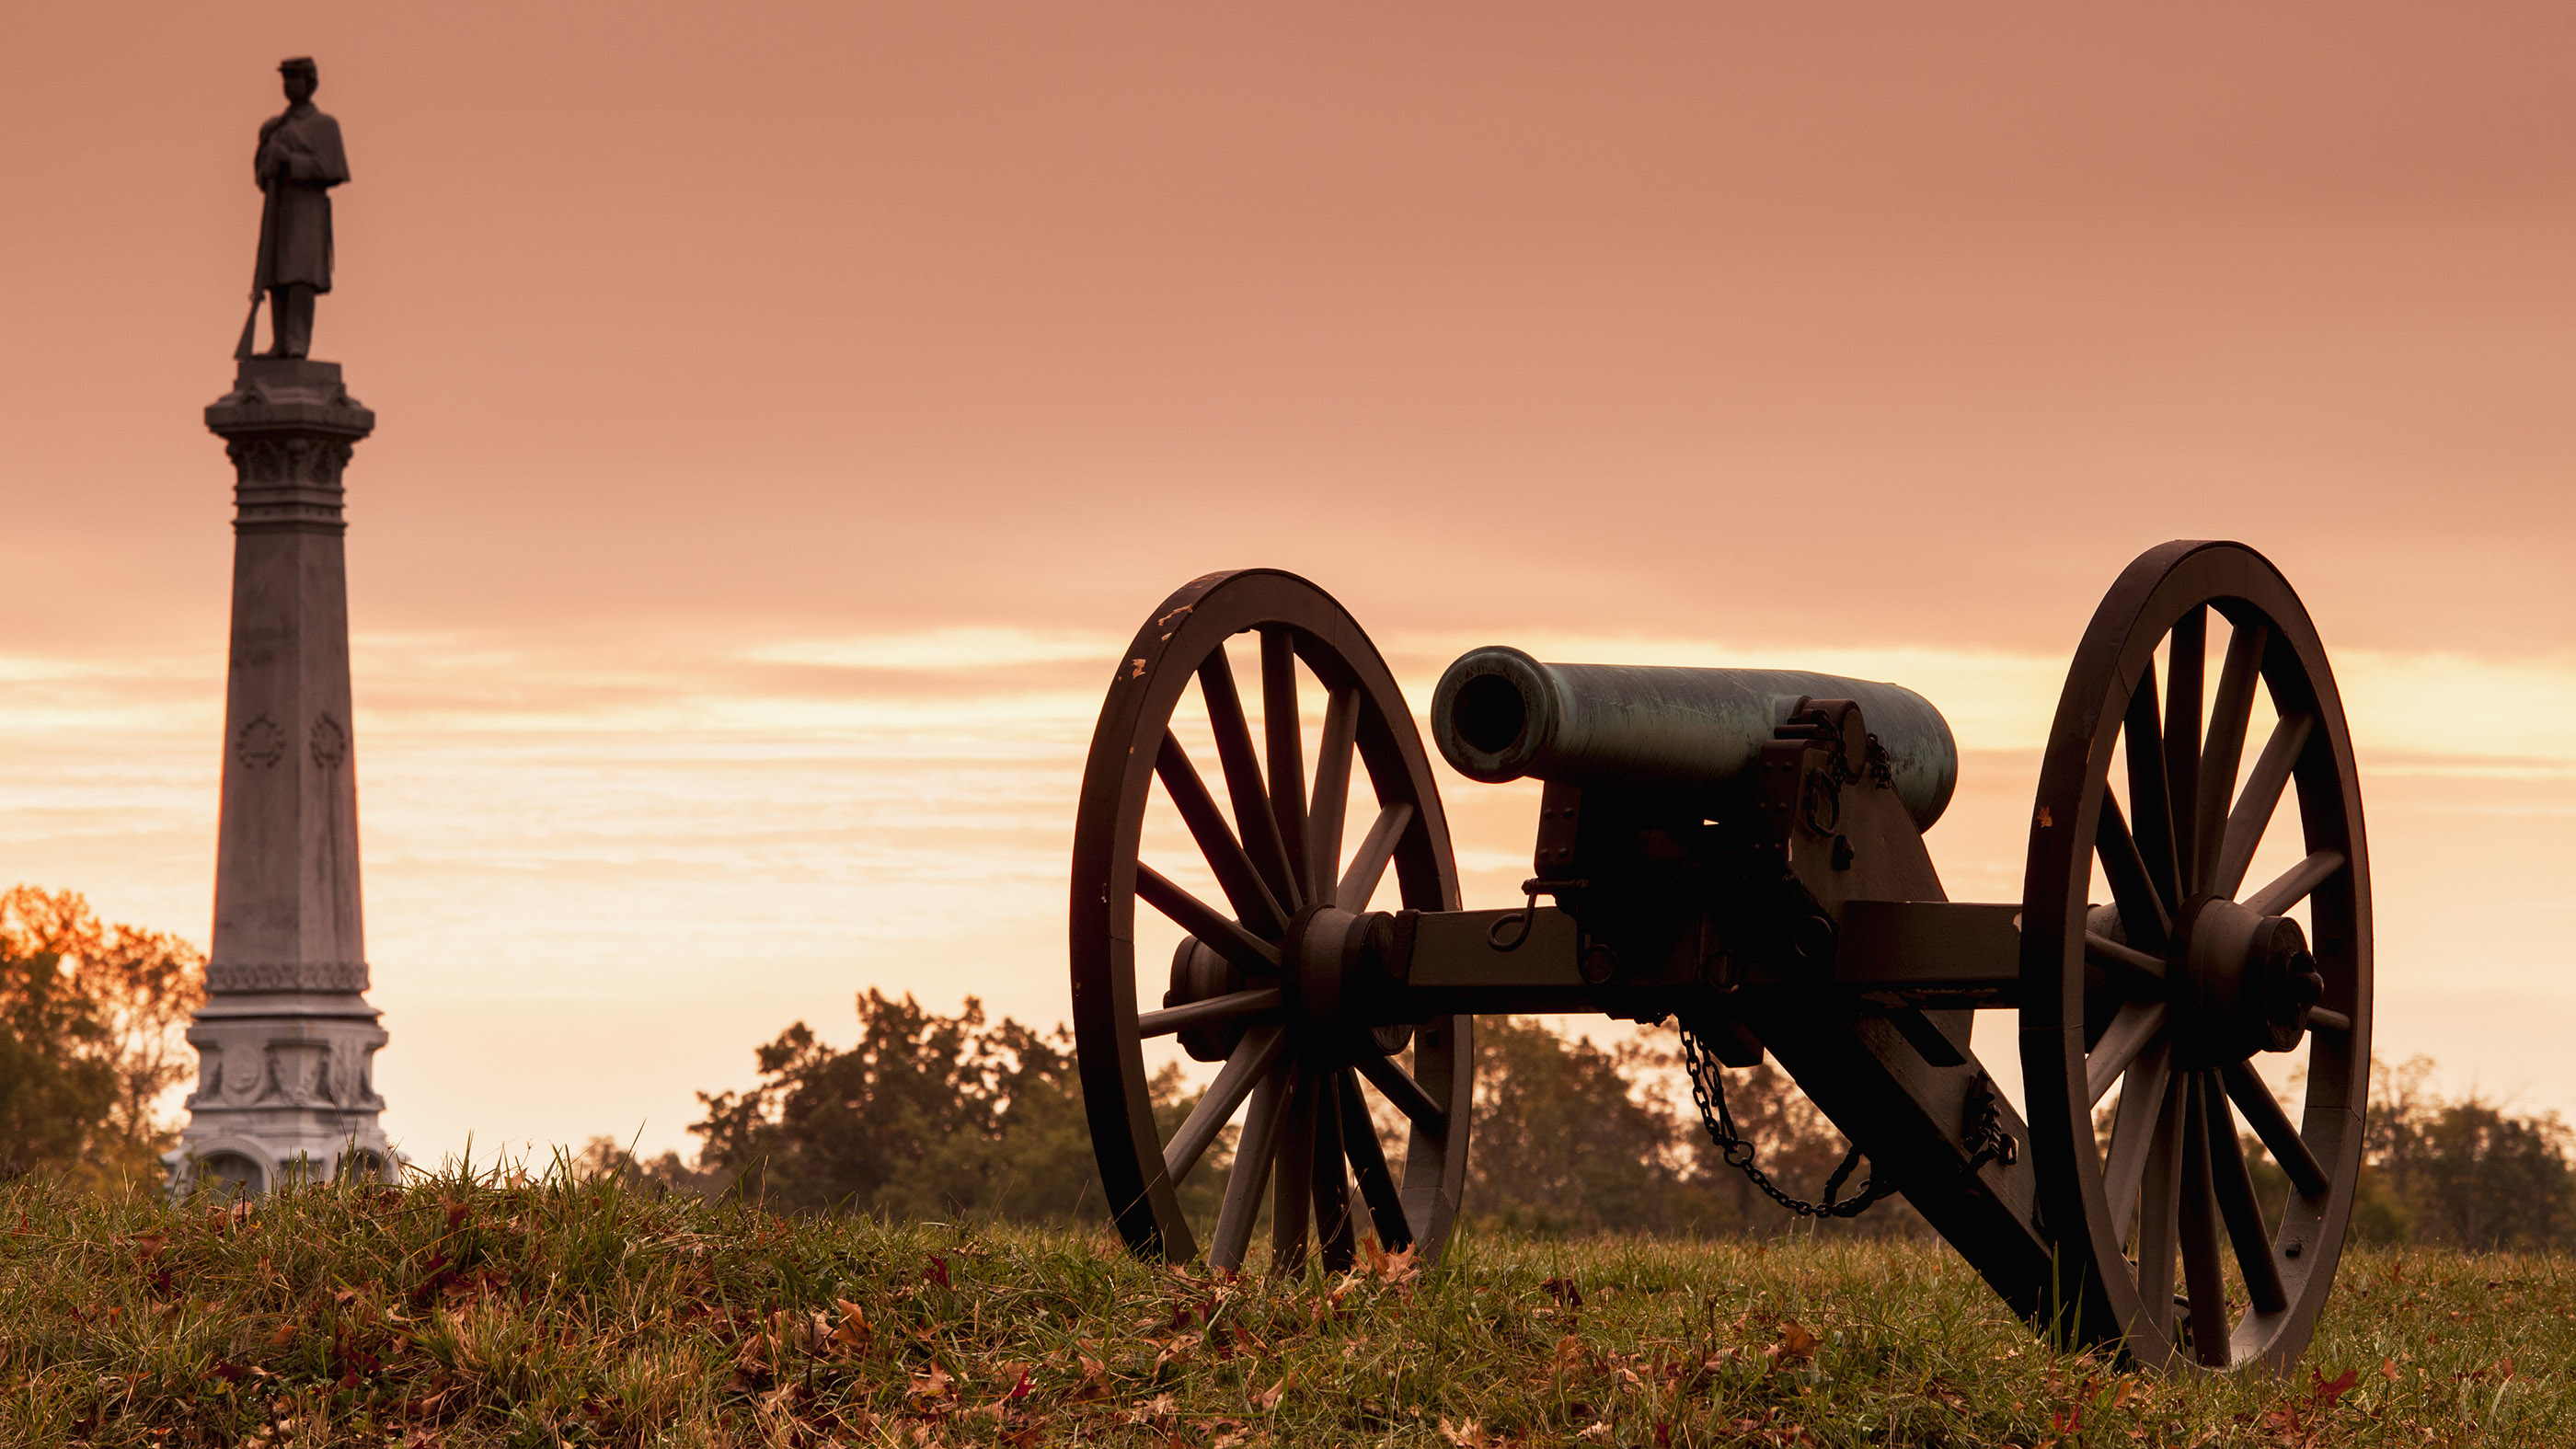 La batalla de Gettysburg, el monumento del campo de batalla y el cañón de la Guerra Civil mostrados al amanecer.